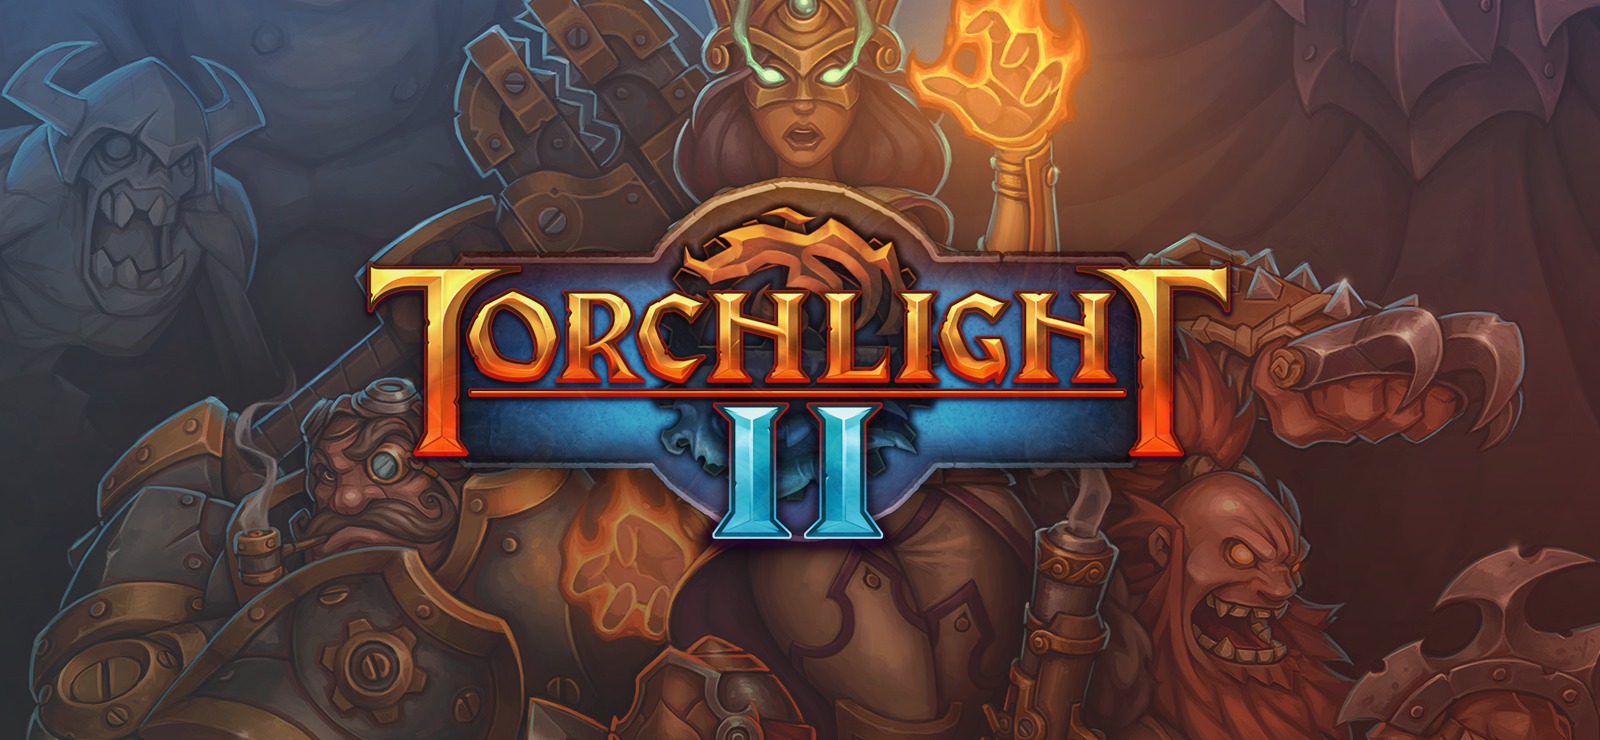 Torchlight 2 sbarca su Switch a settembre con contenuti esclusivi